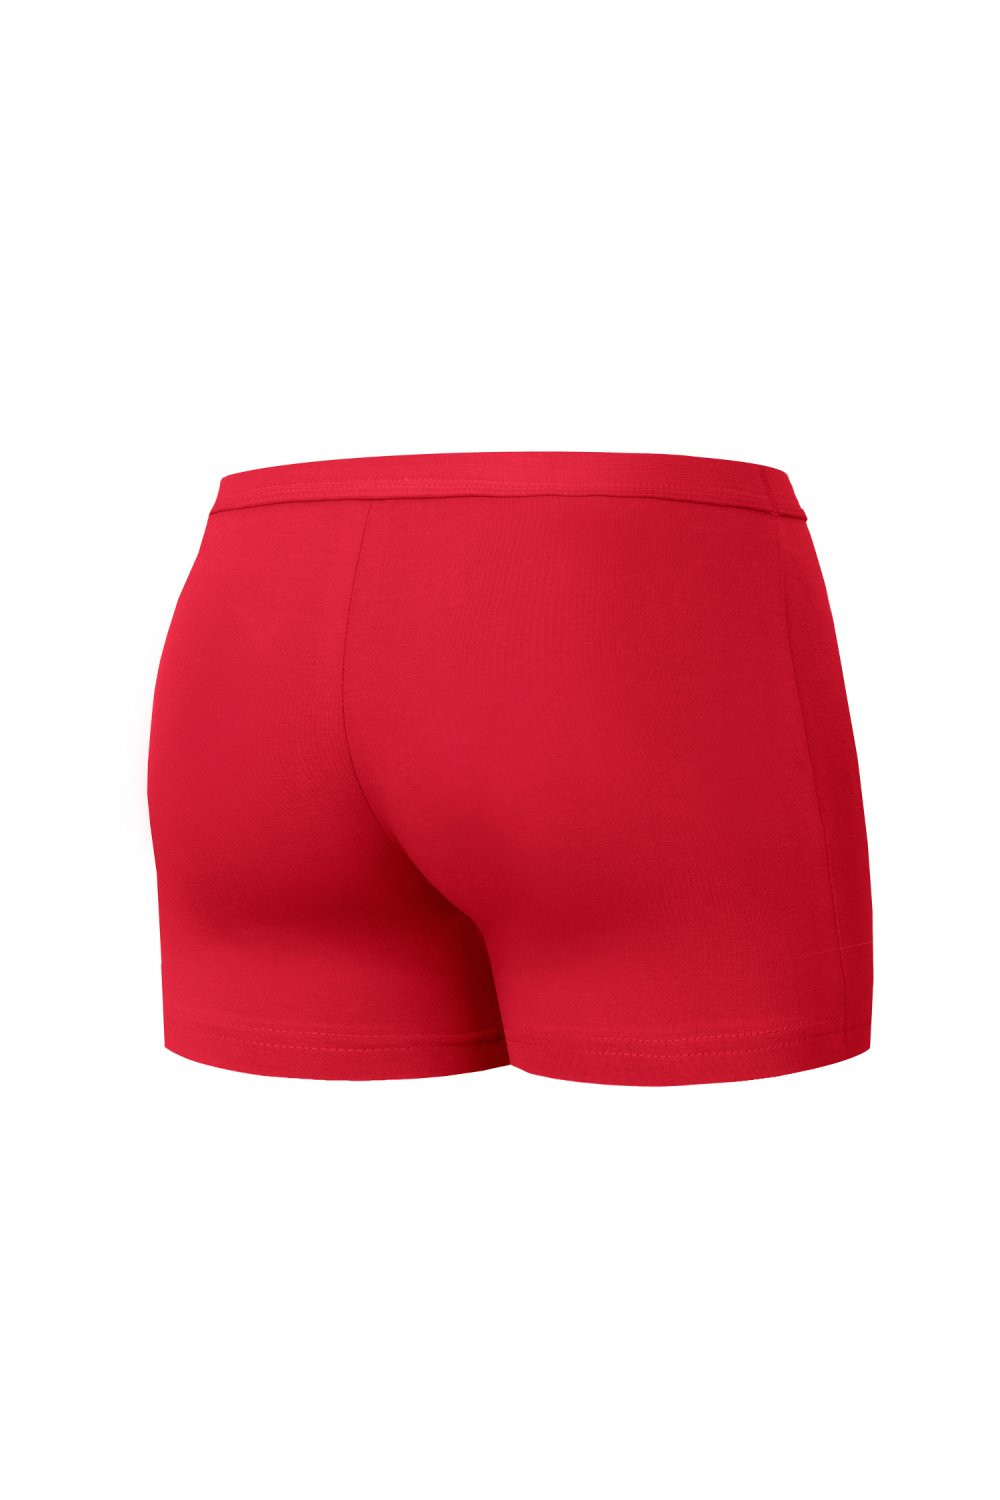 Pánské boxerky 223 Authentic mini red - CORNETTE Červená M